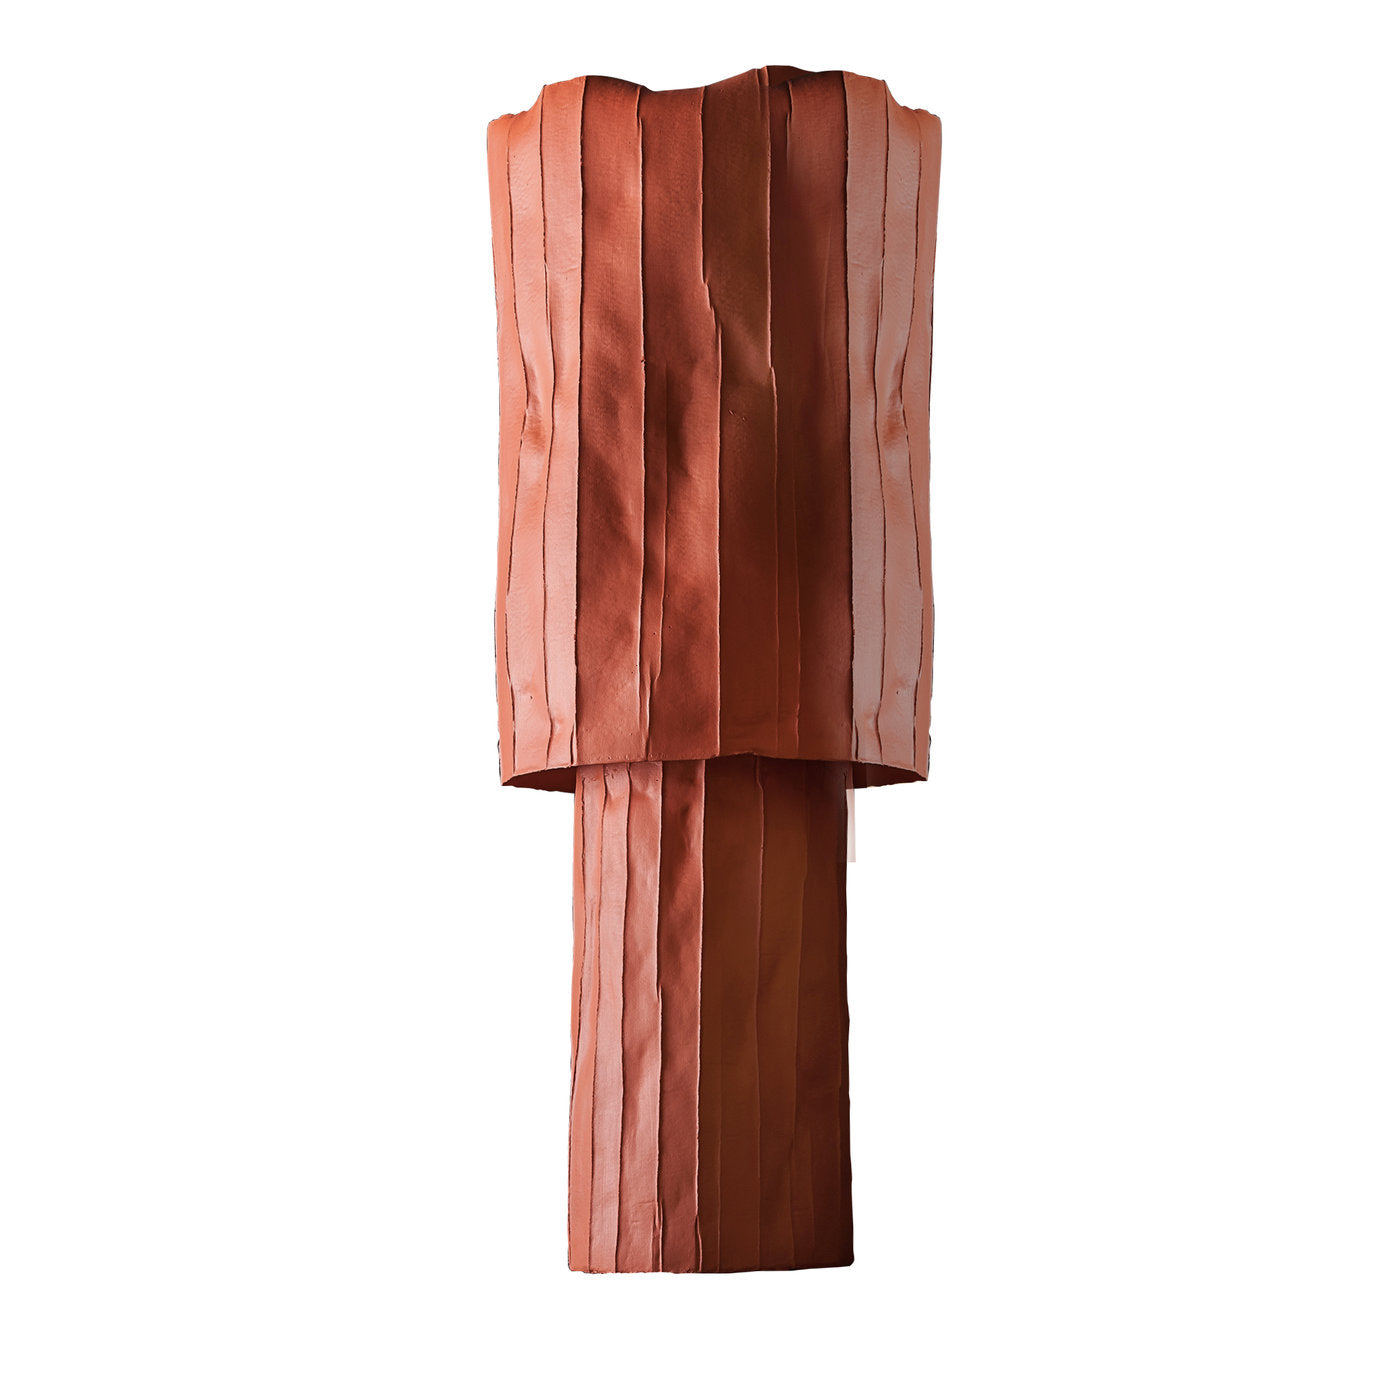 Cartocci Corteccia Orange Tall Vase - Main view